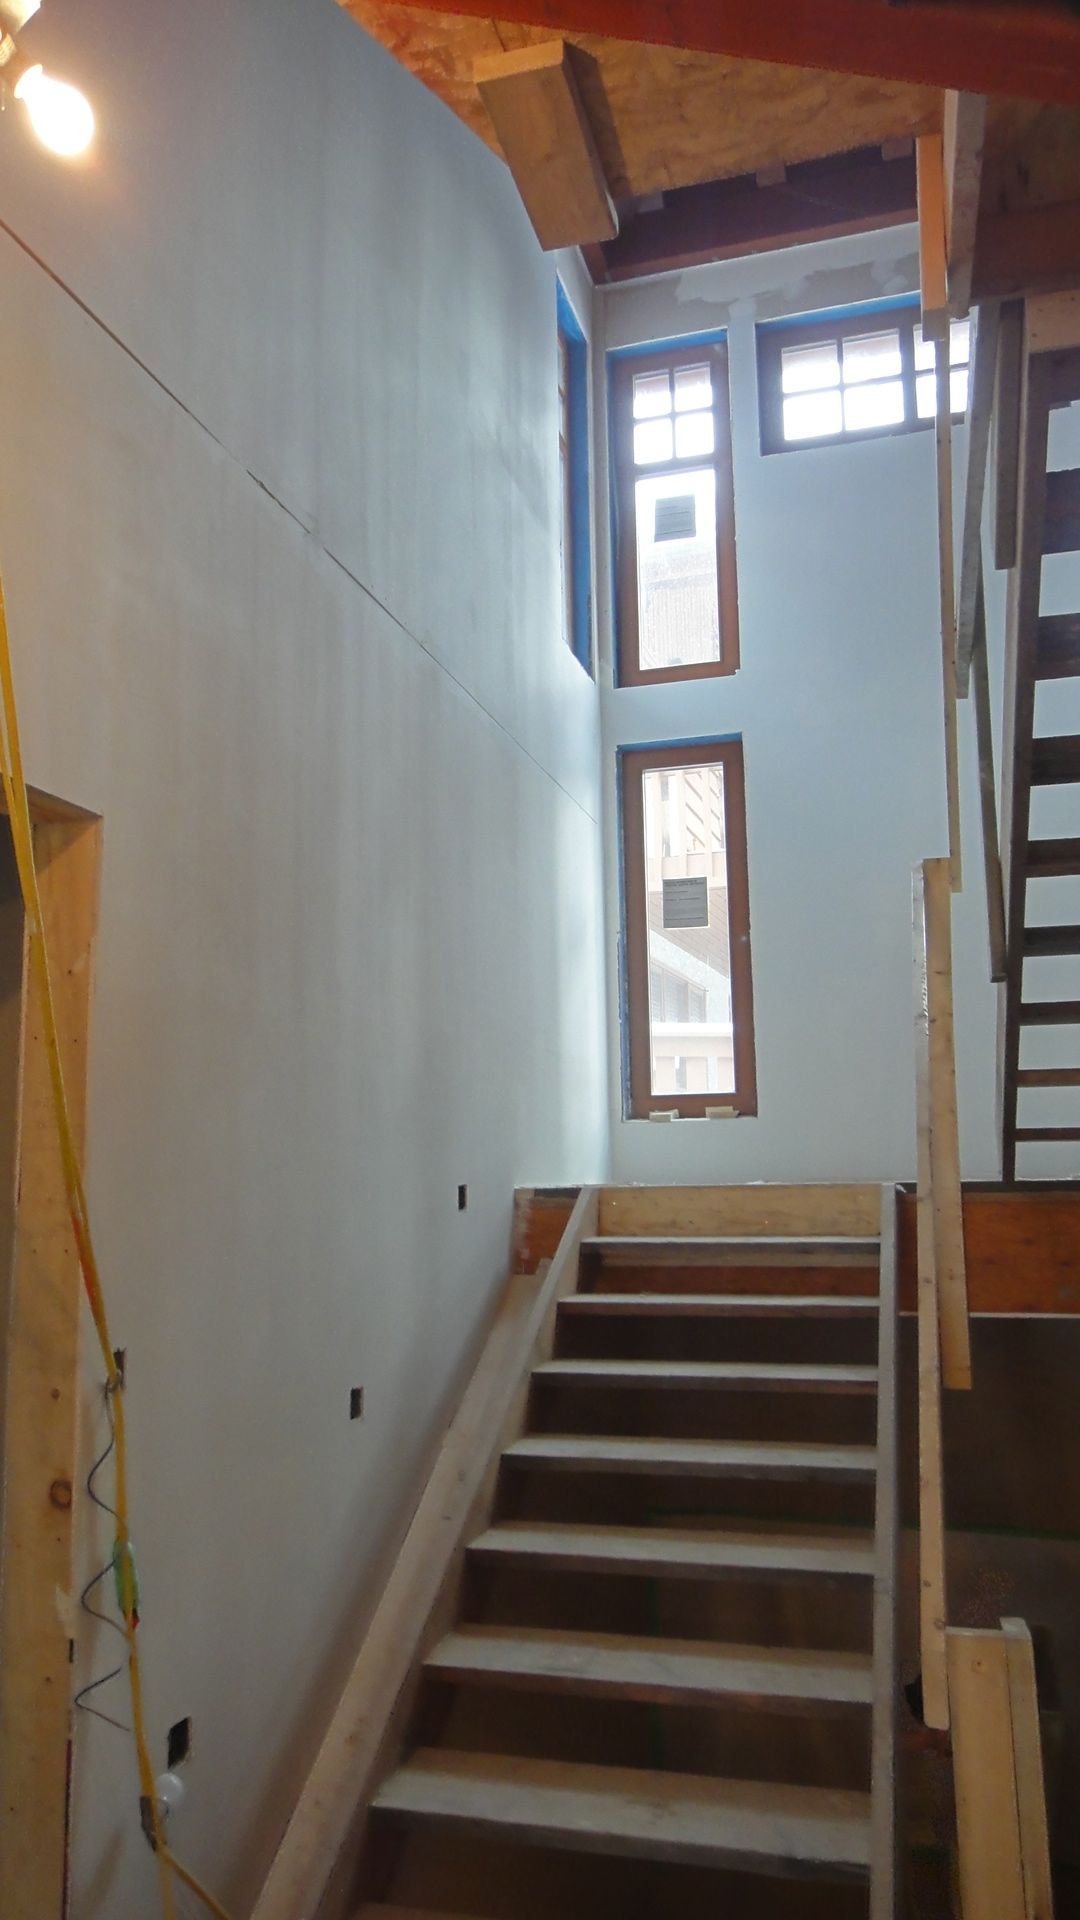 veneer plaster over painted drywall